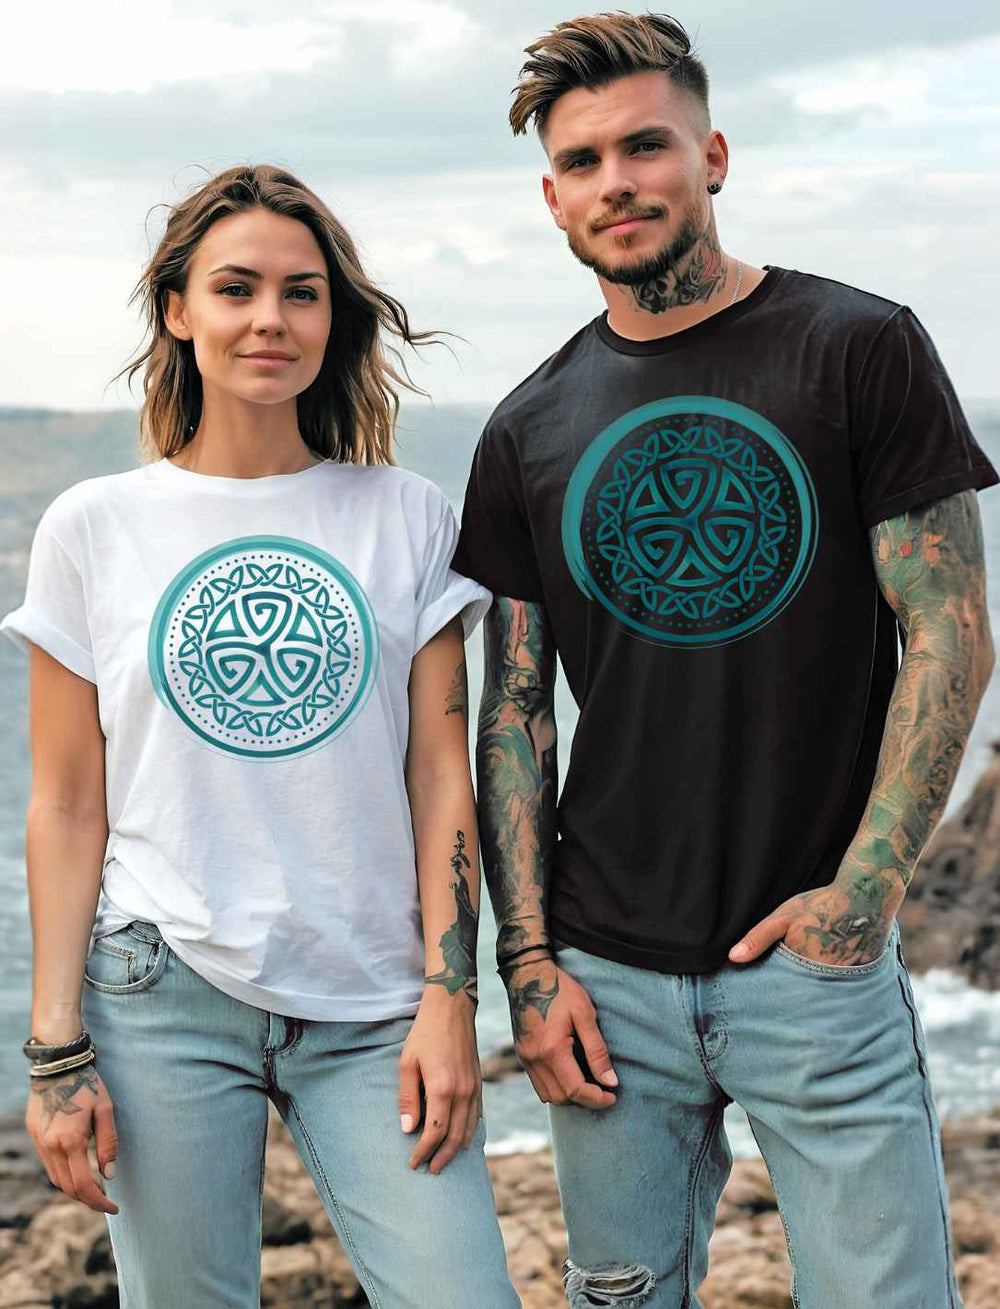 Junge Frau und junger Mann tragen das Aqua Triskele Knoten Shirt, die Frau in Weiß und der Mann in Schwarz. Sie stehen an einer felsigen Küste